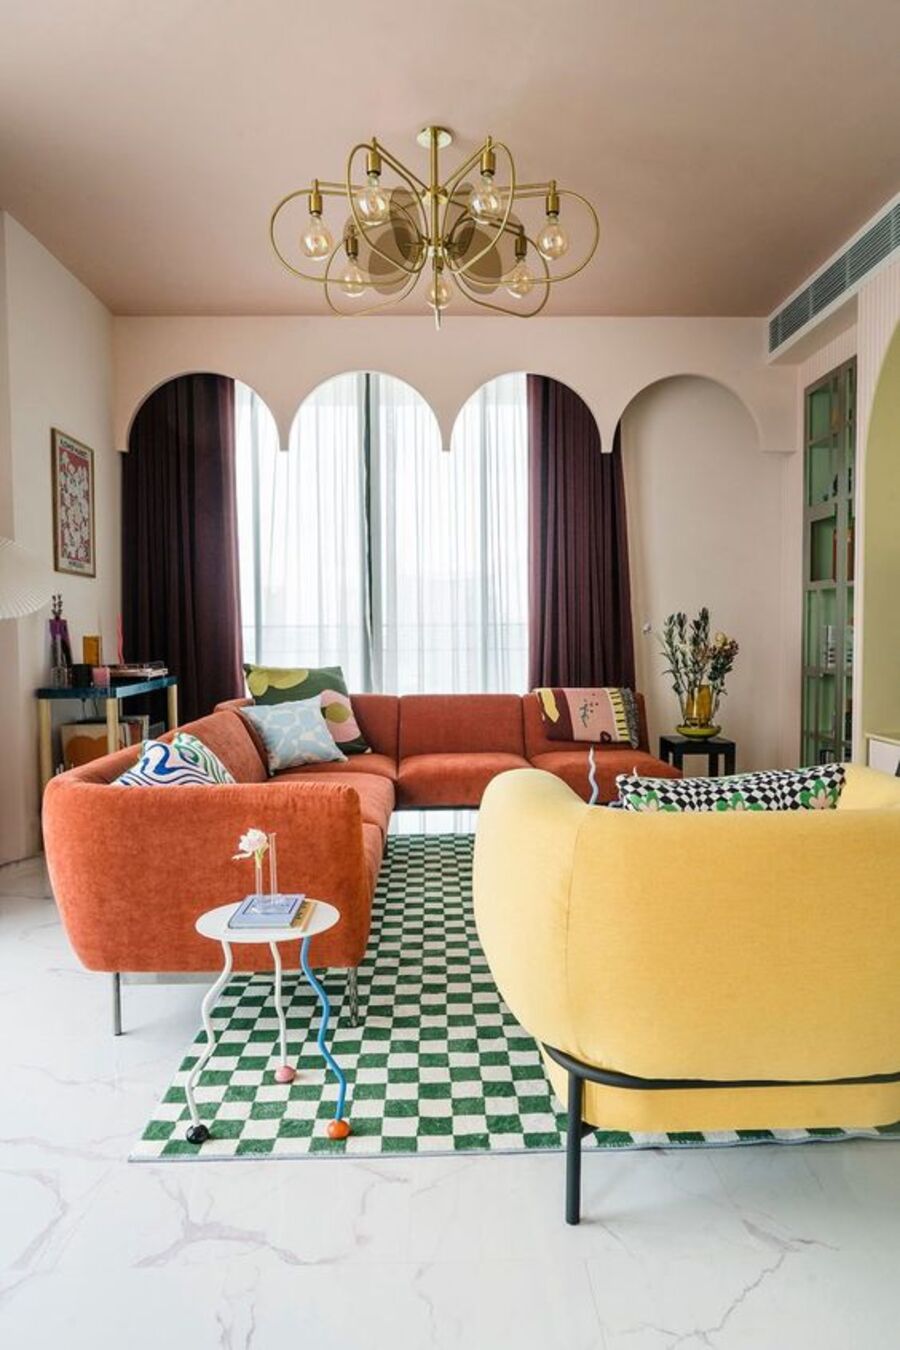 Living de estilo mid century, con piso blanco y alfombra de damero o patrón de ajedrez blanco y verde. Sillón en L de color naranjo, con cuatro cojines estampados. Sofá amarillo, lámpara colgante dorada.